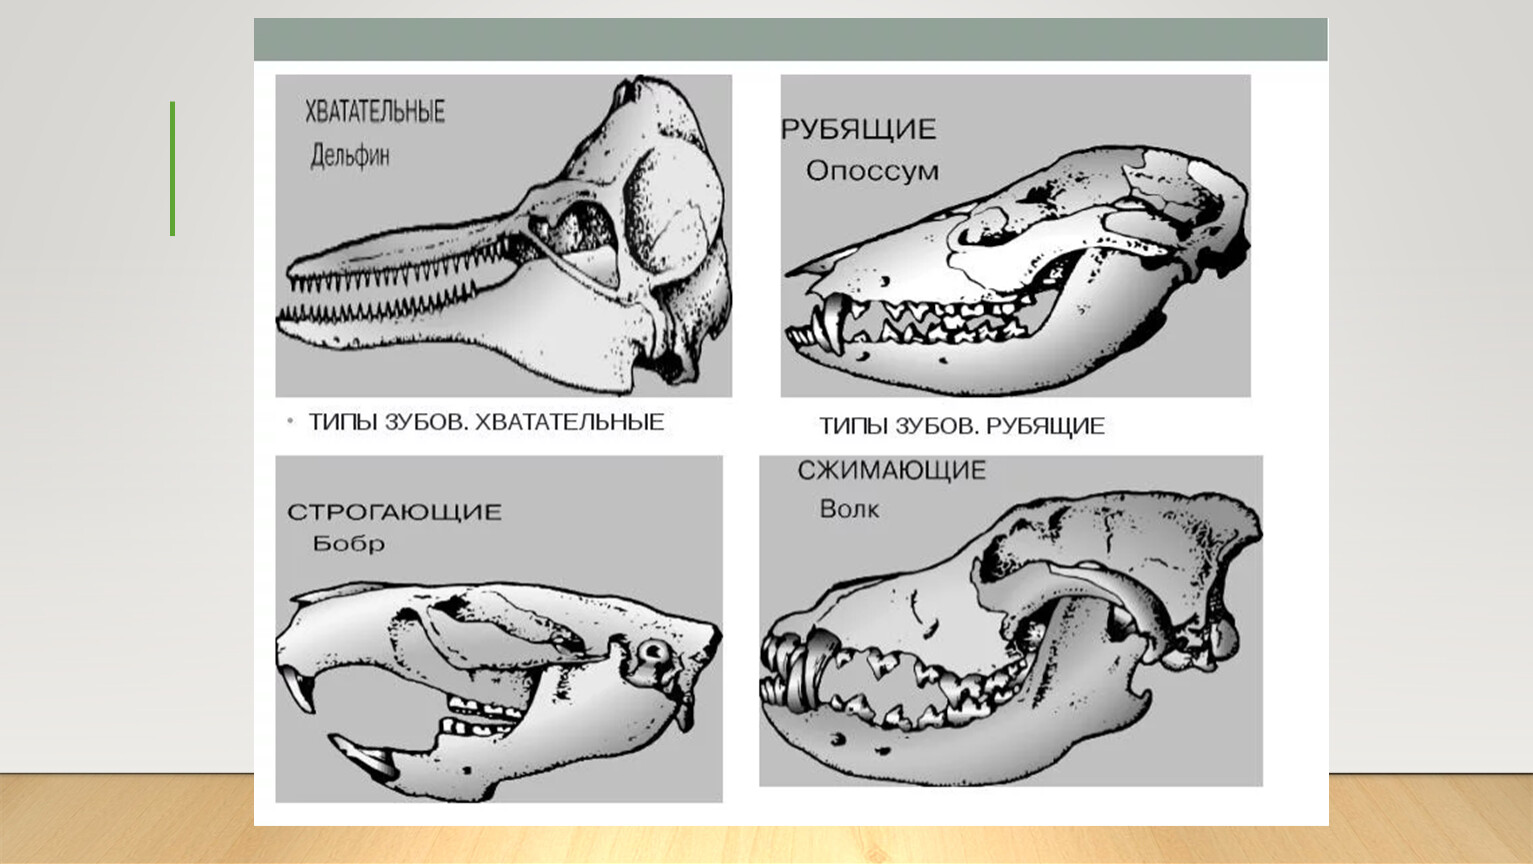 Формула зубов китообразных. Зубная система млекопитающих анатомия. Строение зубов млекопитающих зубная система. Зубные системы животных разных отрядов млекопитающих. Зубная система насекомоядных млекопитающих.